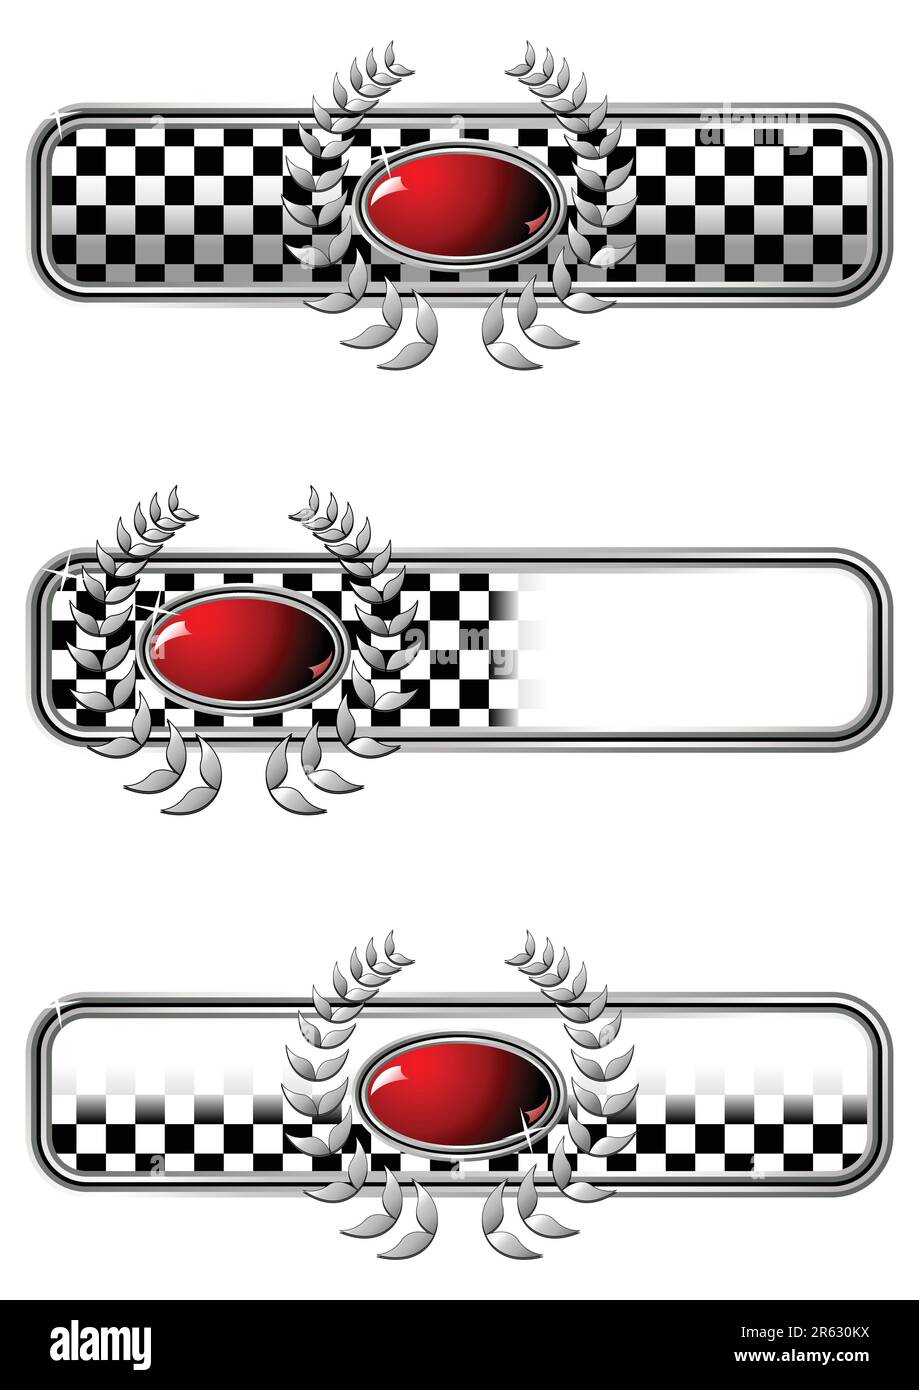 Différents badges de course avec un bijou ovale rouge sur fond blanc Illustration de Vecteur